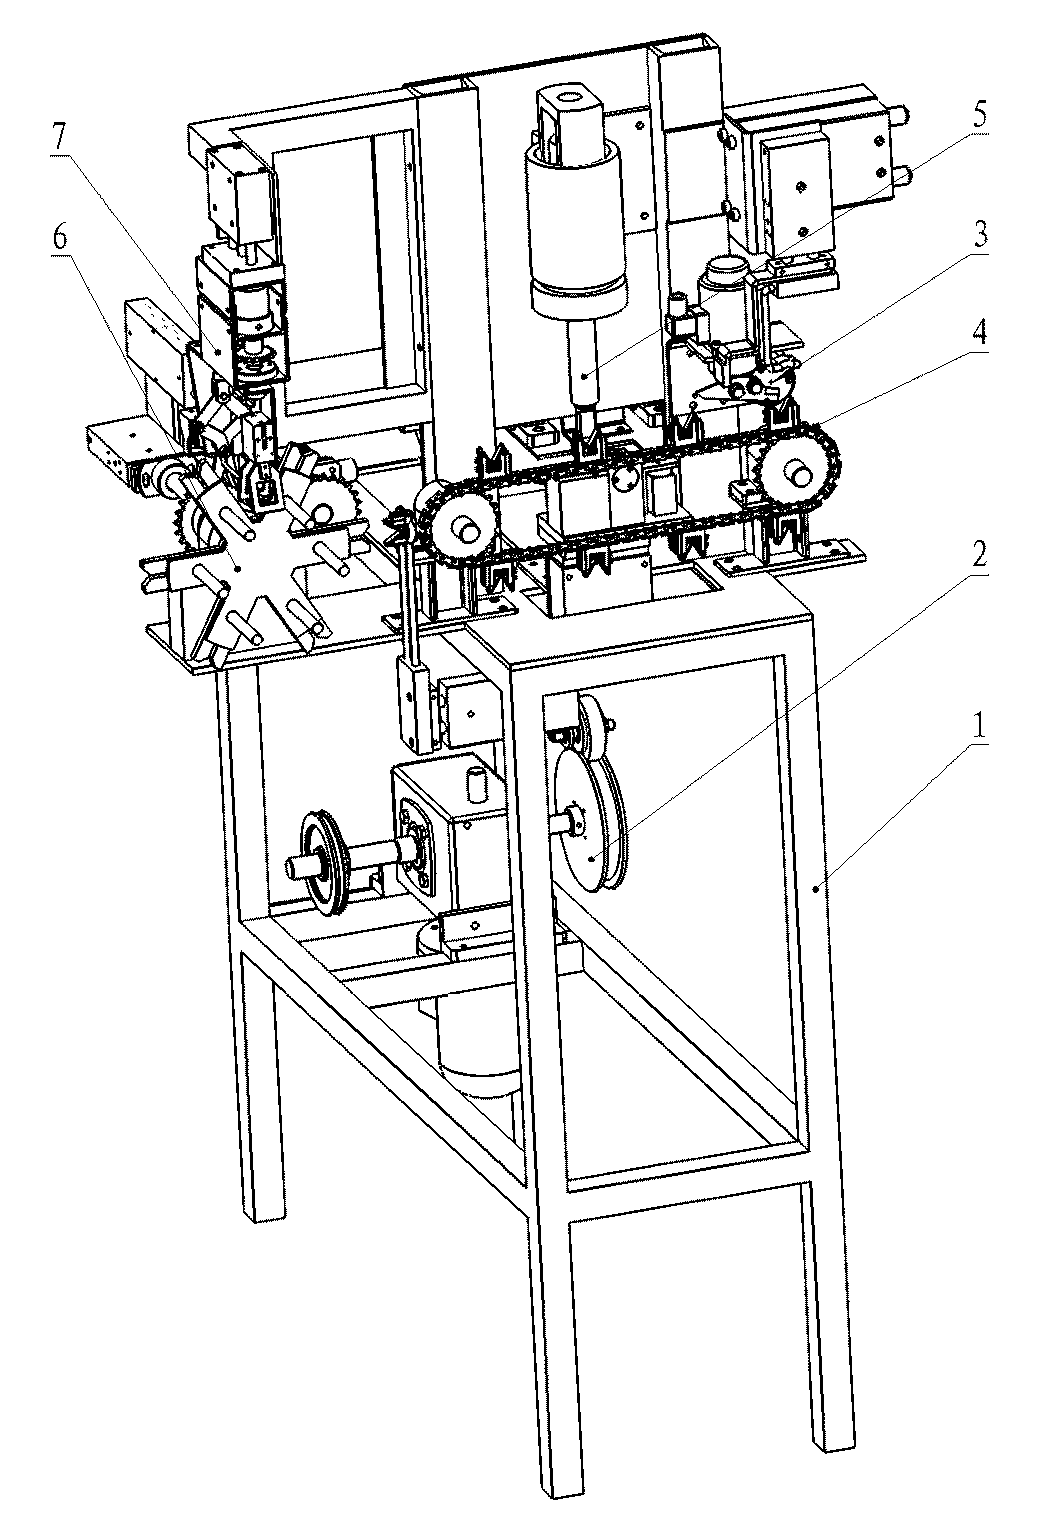 Full-automatic nonel tube machine